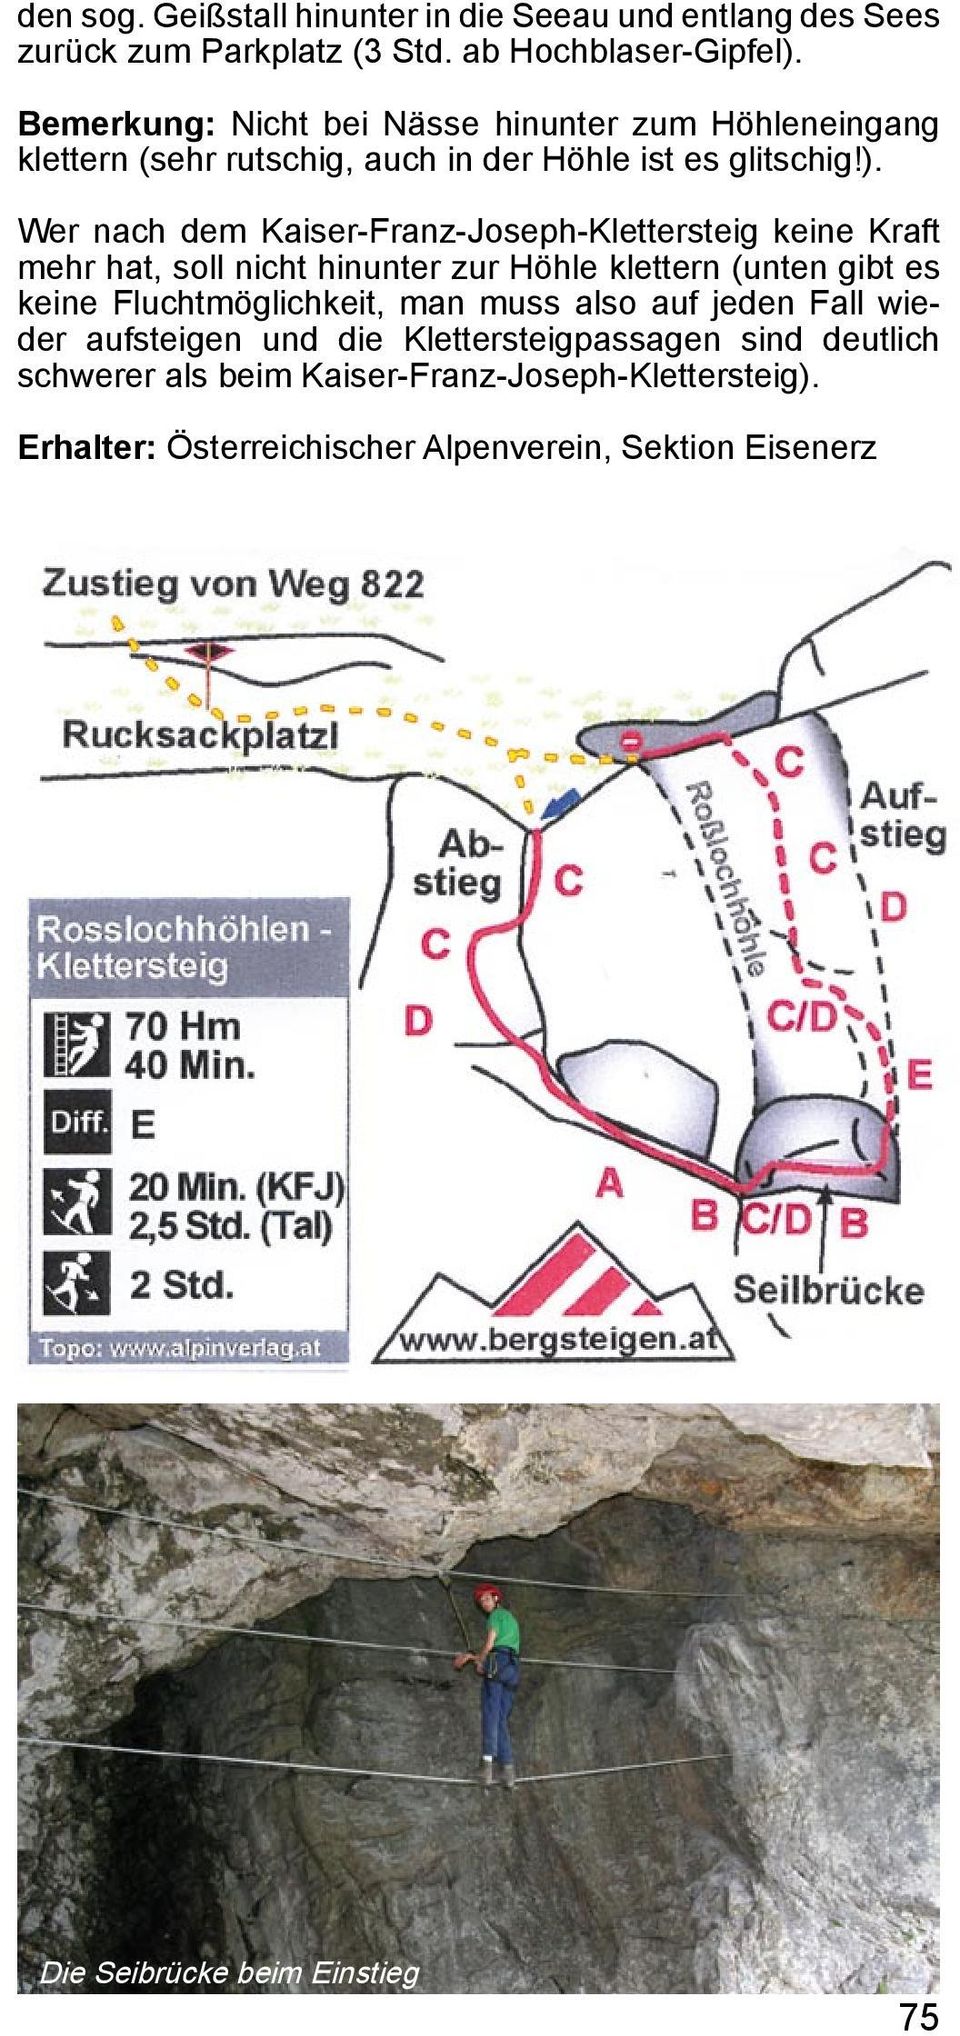 Wer nach dem Kaiser-Franz-Joseph-Klettersteig keine Kraft mehr hat, soll nicht hinunter zur Höhle klettern (unten gibt es keine Fluchtmöglichkeit, man